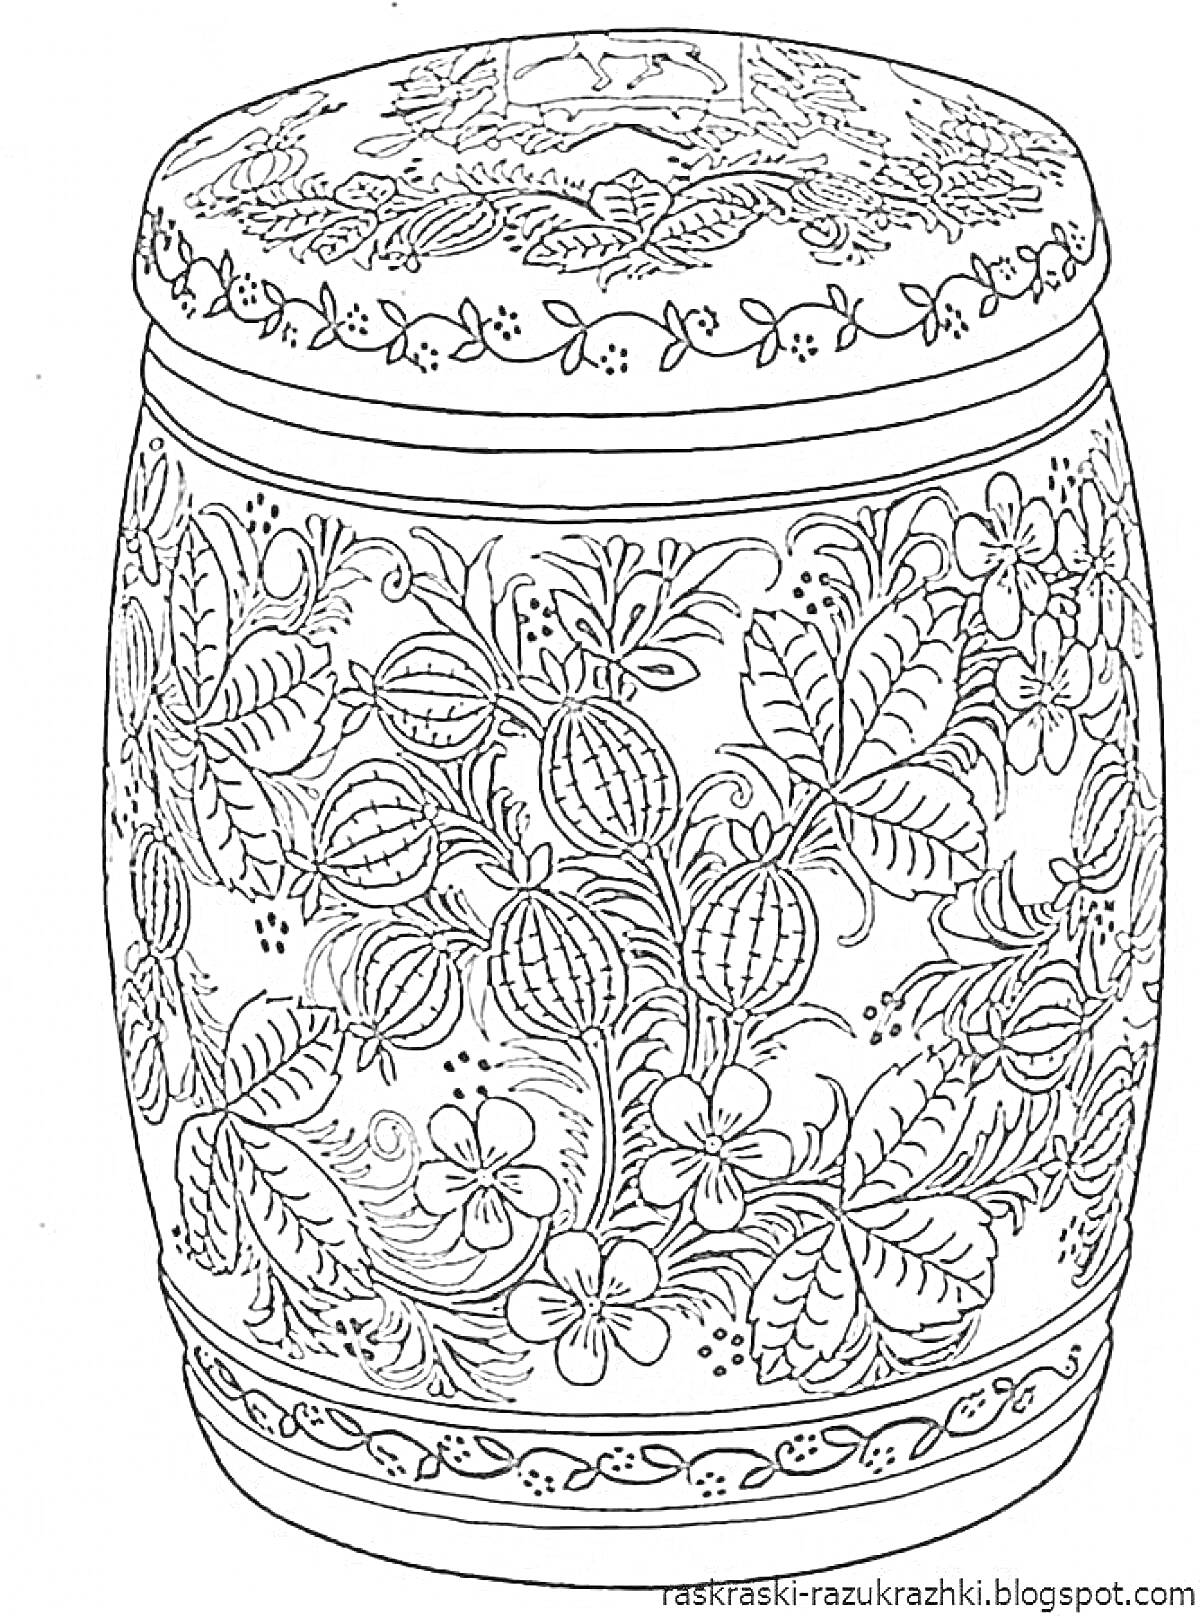 Раскраска хохломская расписная бочка с цветами, листьями и ягодами